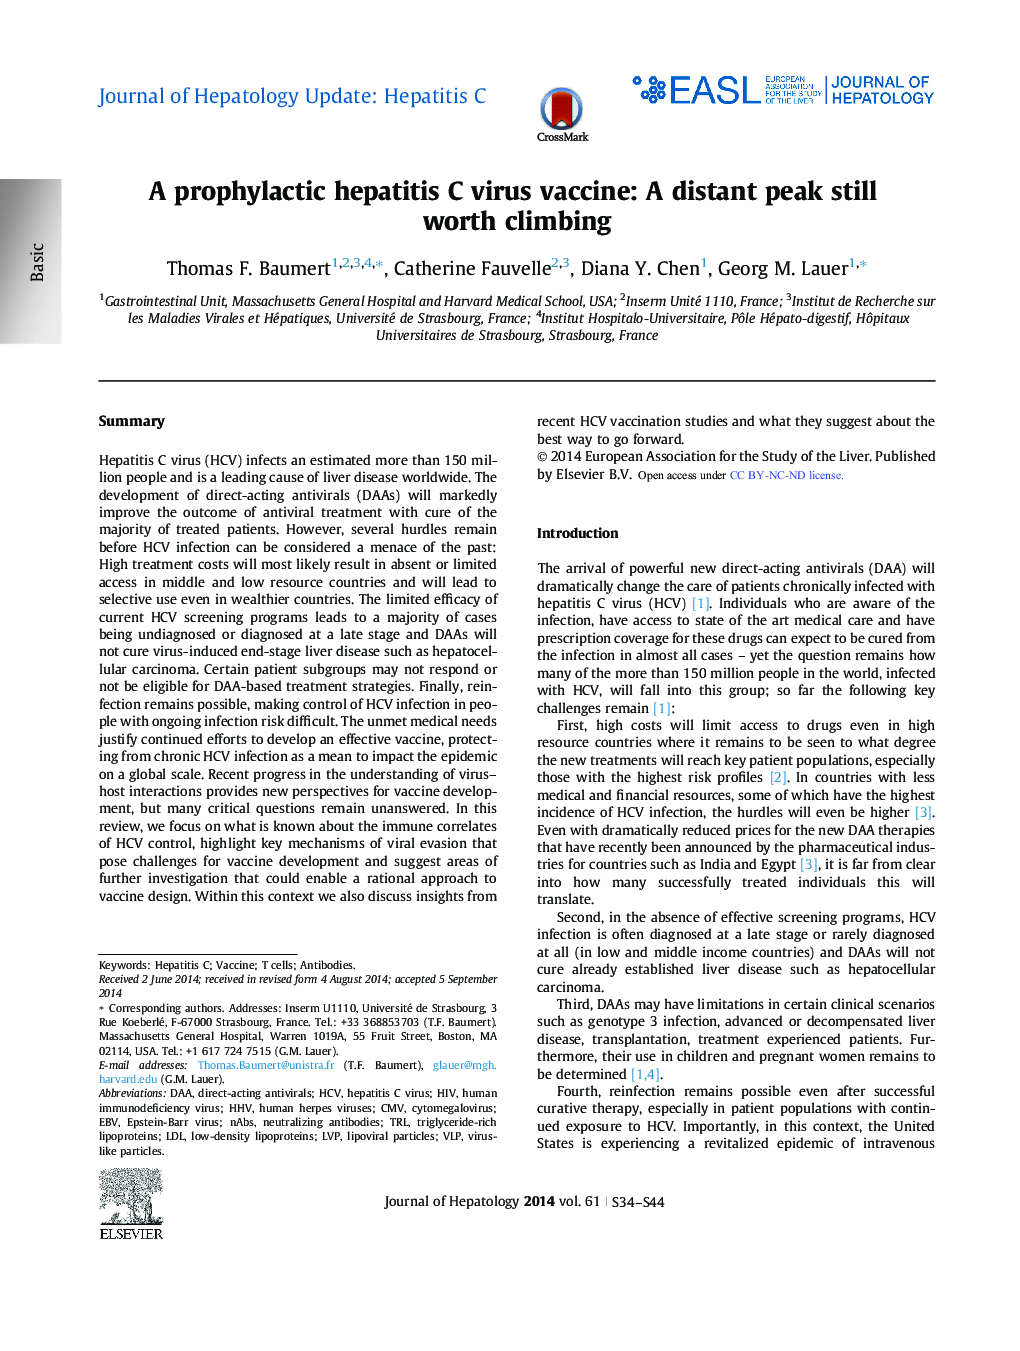 Journal of Hepatology Update: Hepatitis CA prophylactic hepatitis C virus vaccine: A distant peak still worth climbing